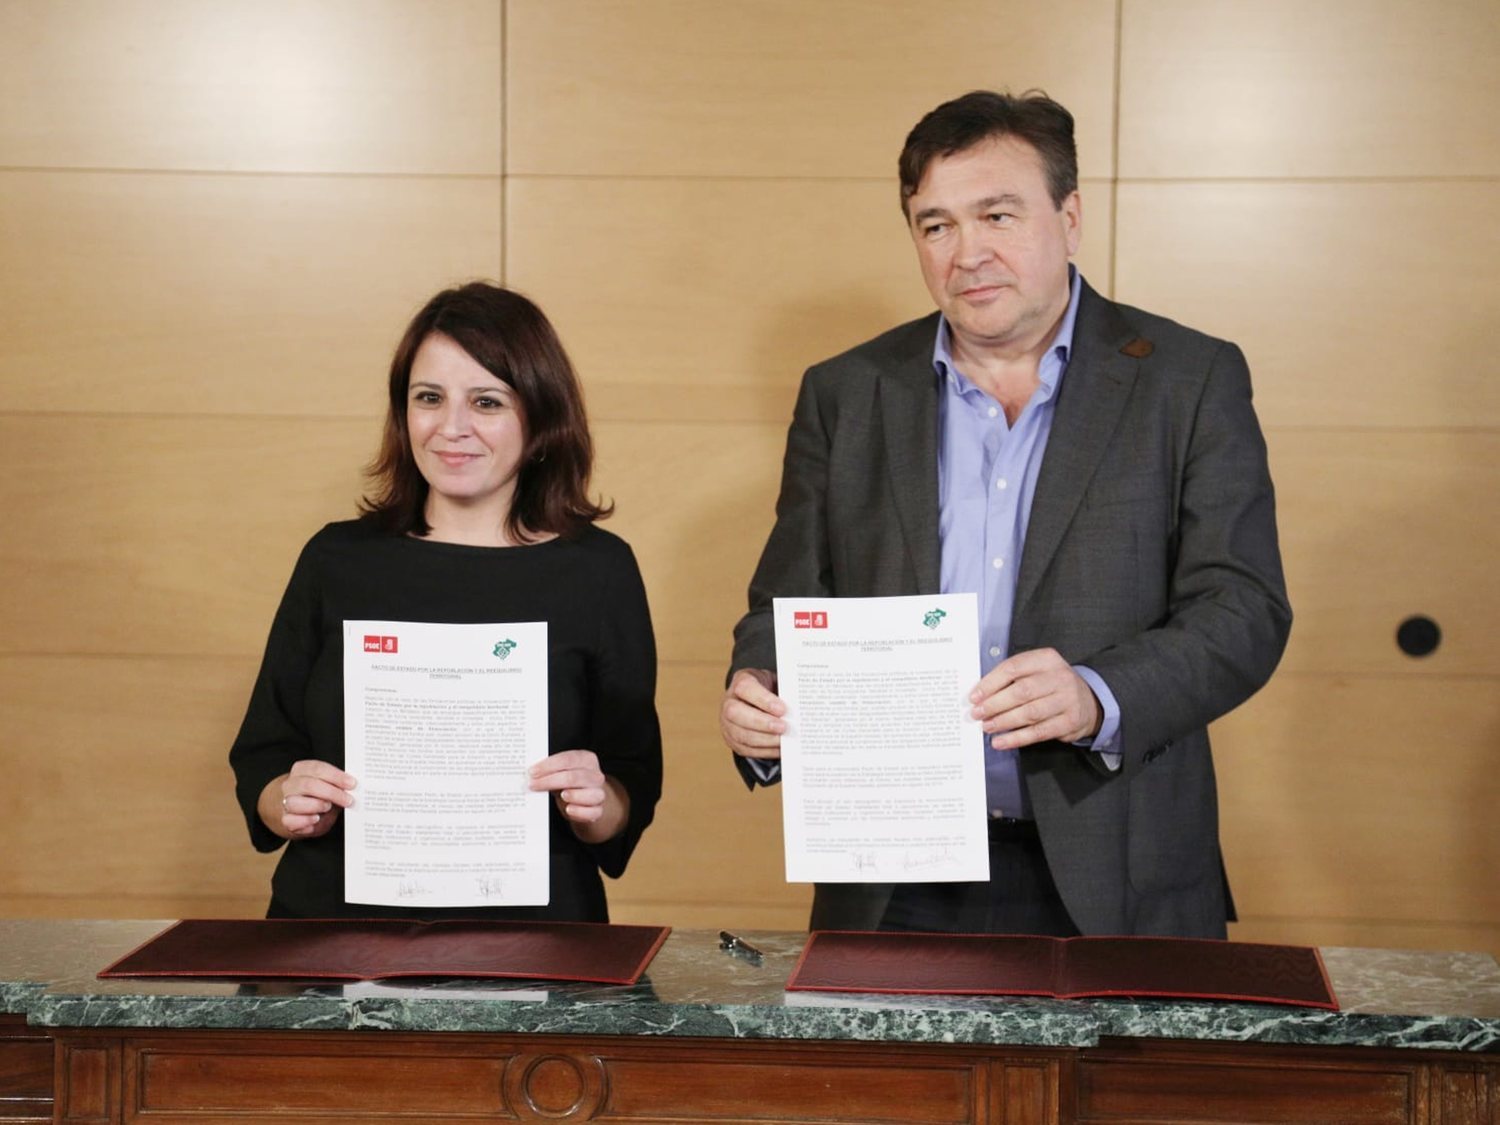 Adriana Lastra anuncia que llevará ante la justicia "amenazas y calumnias" contra el PSOE